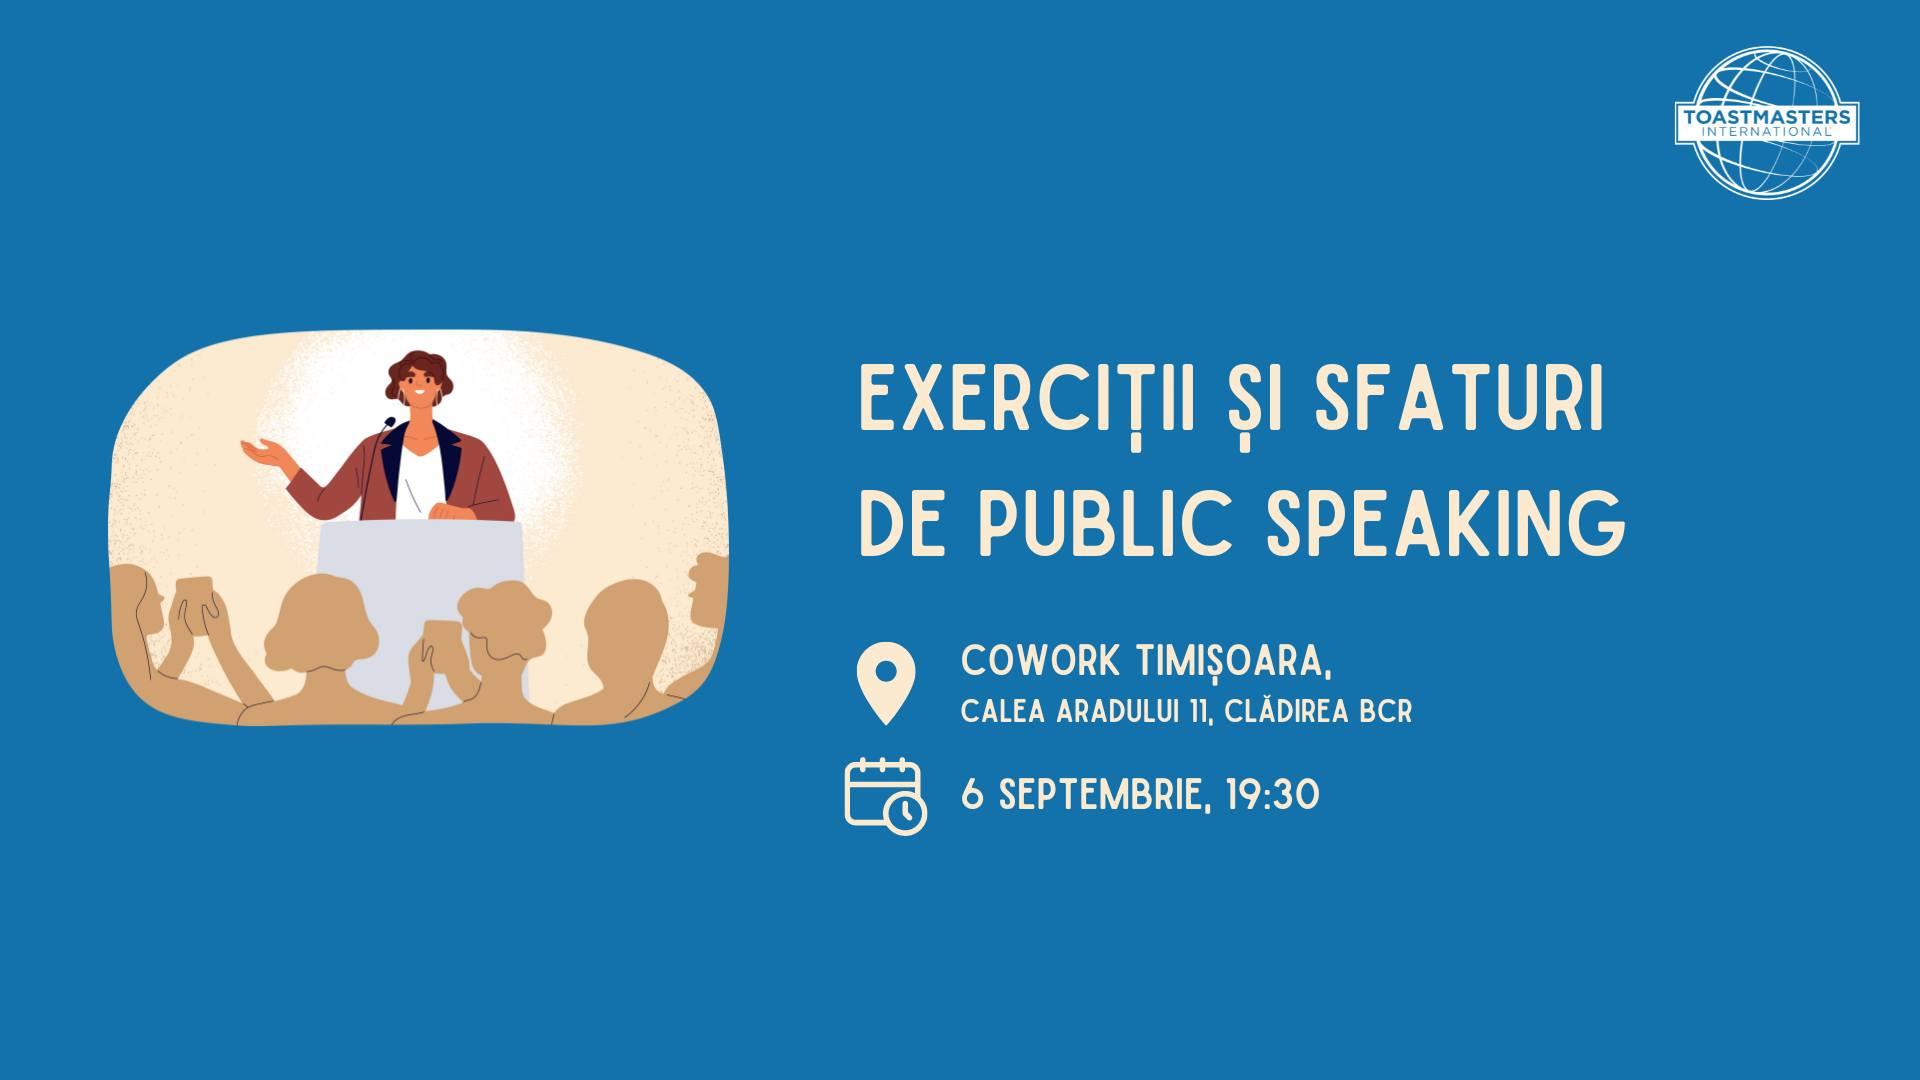 Întâlnire de vorbit în public - Timișoara Toastmasters 